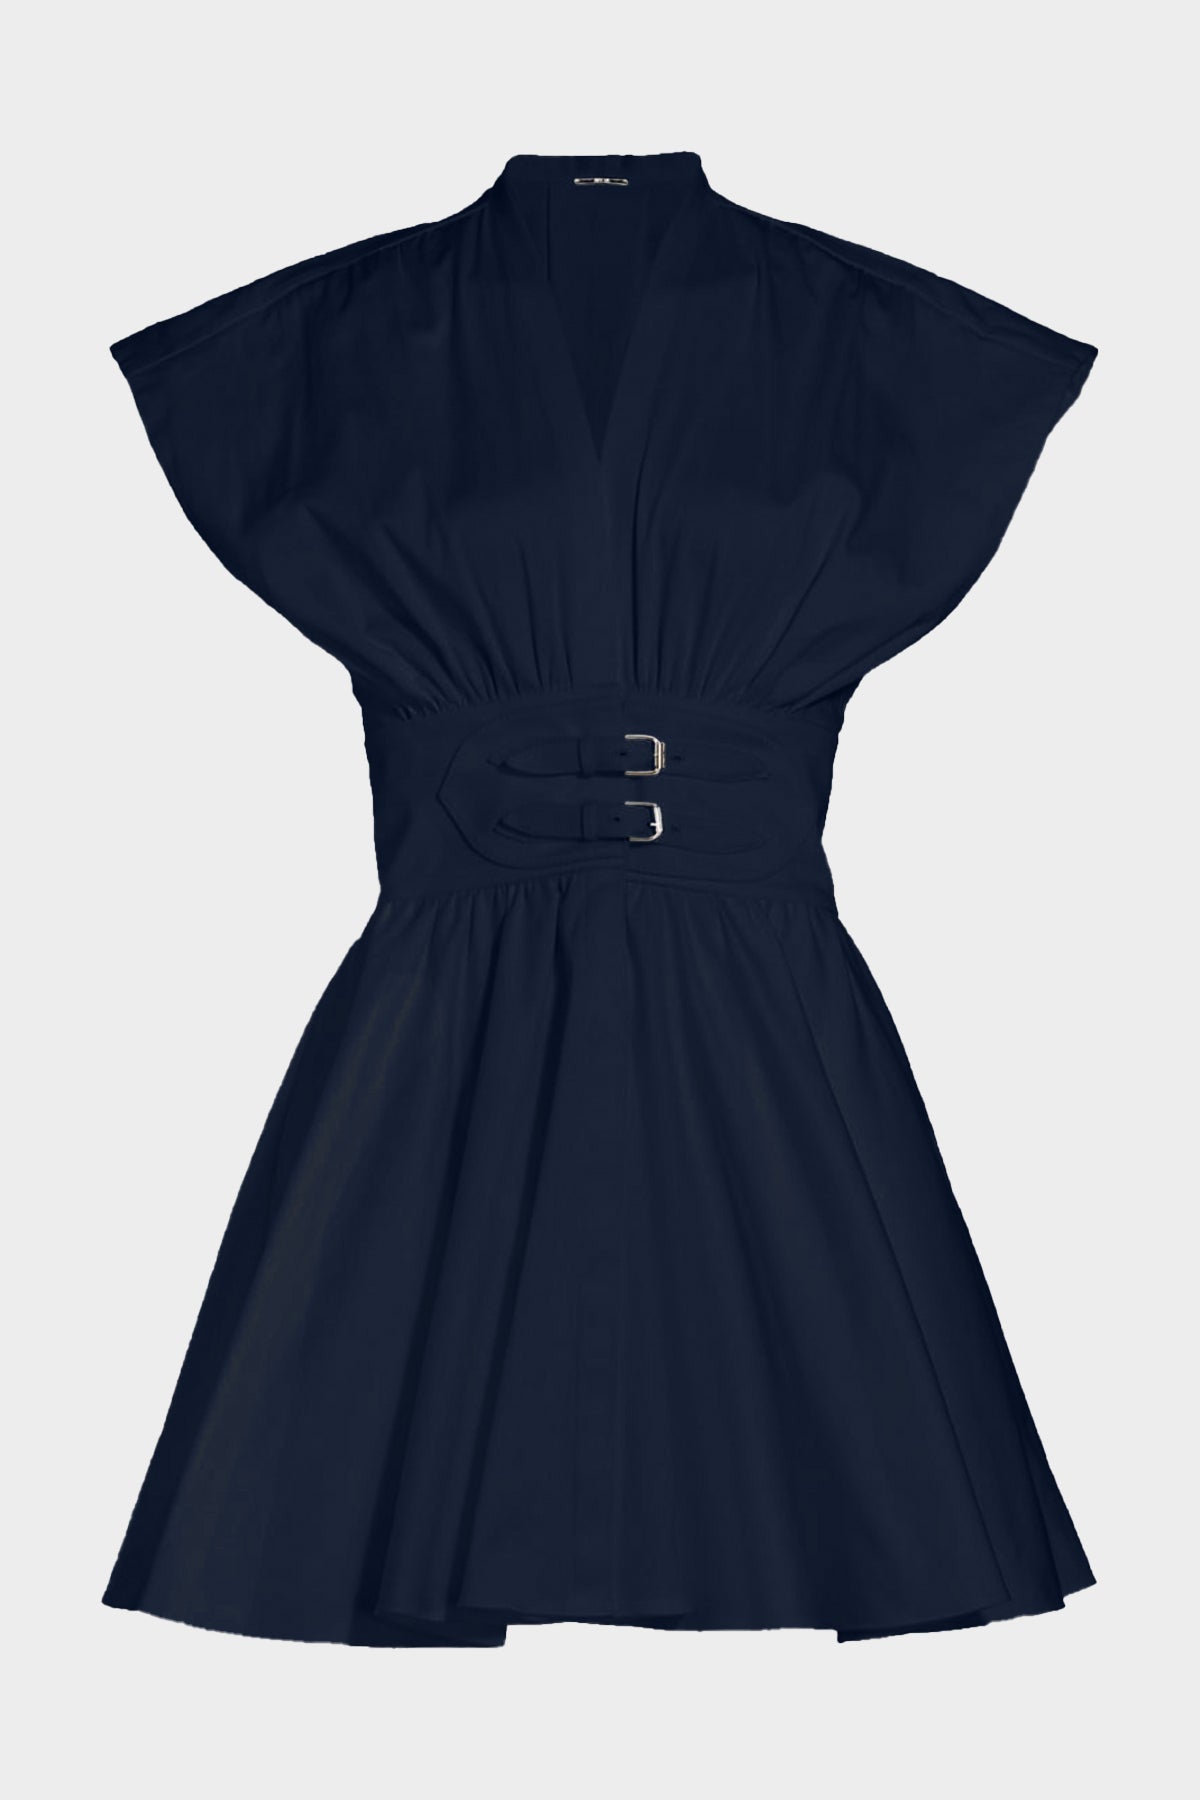 Bree Mini Dress in Blue - shop-olivia.com